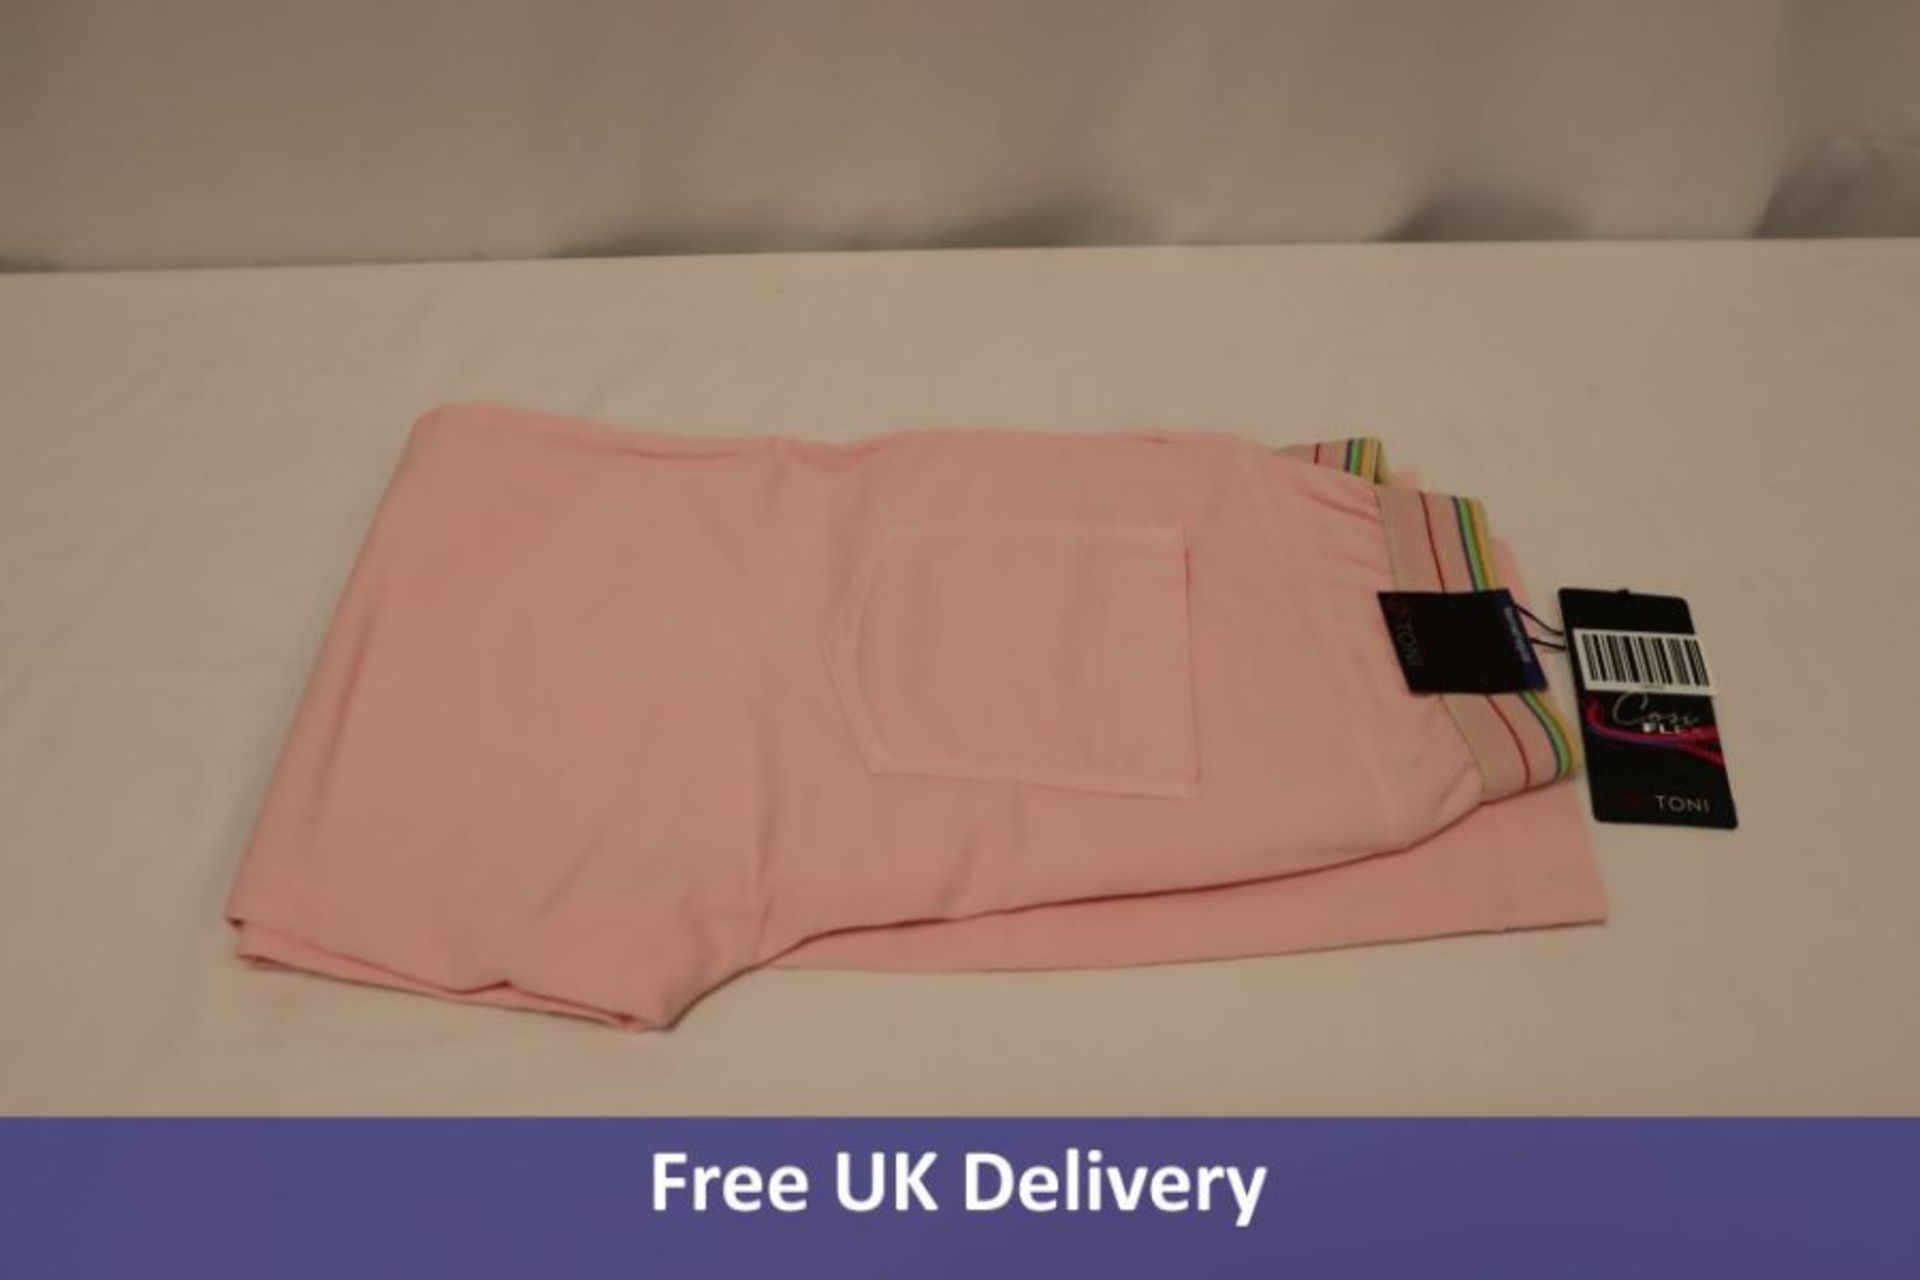 Toni Women's Trousers, Sue Jogpants 3/4, Light Pink, Medium